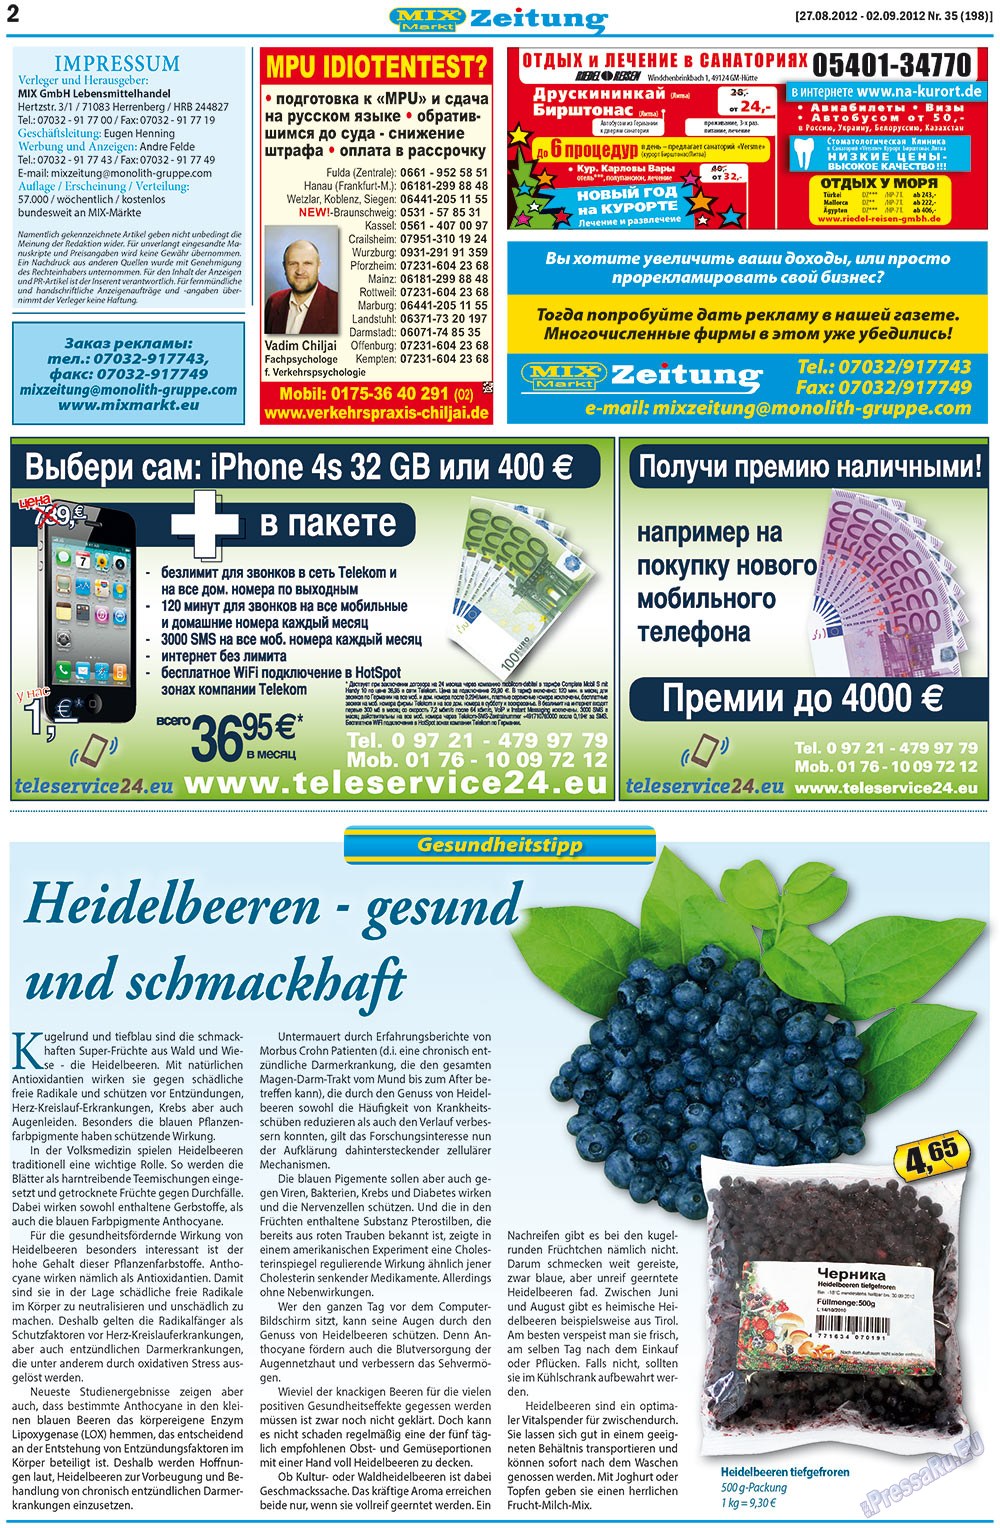 MIX-Markt Zeitung, газета. 2012 №35 стр.2